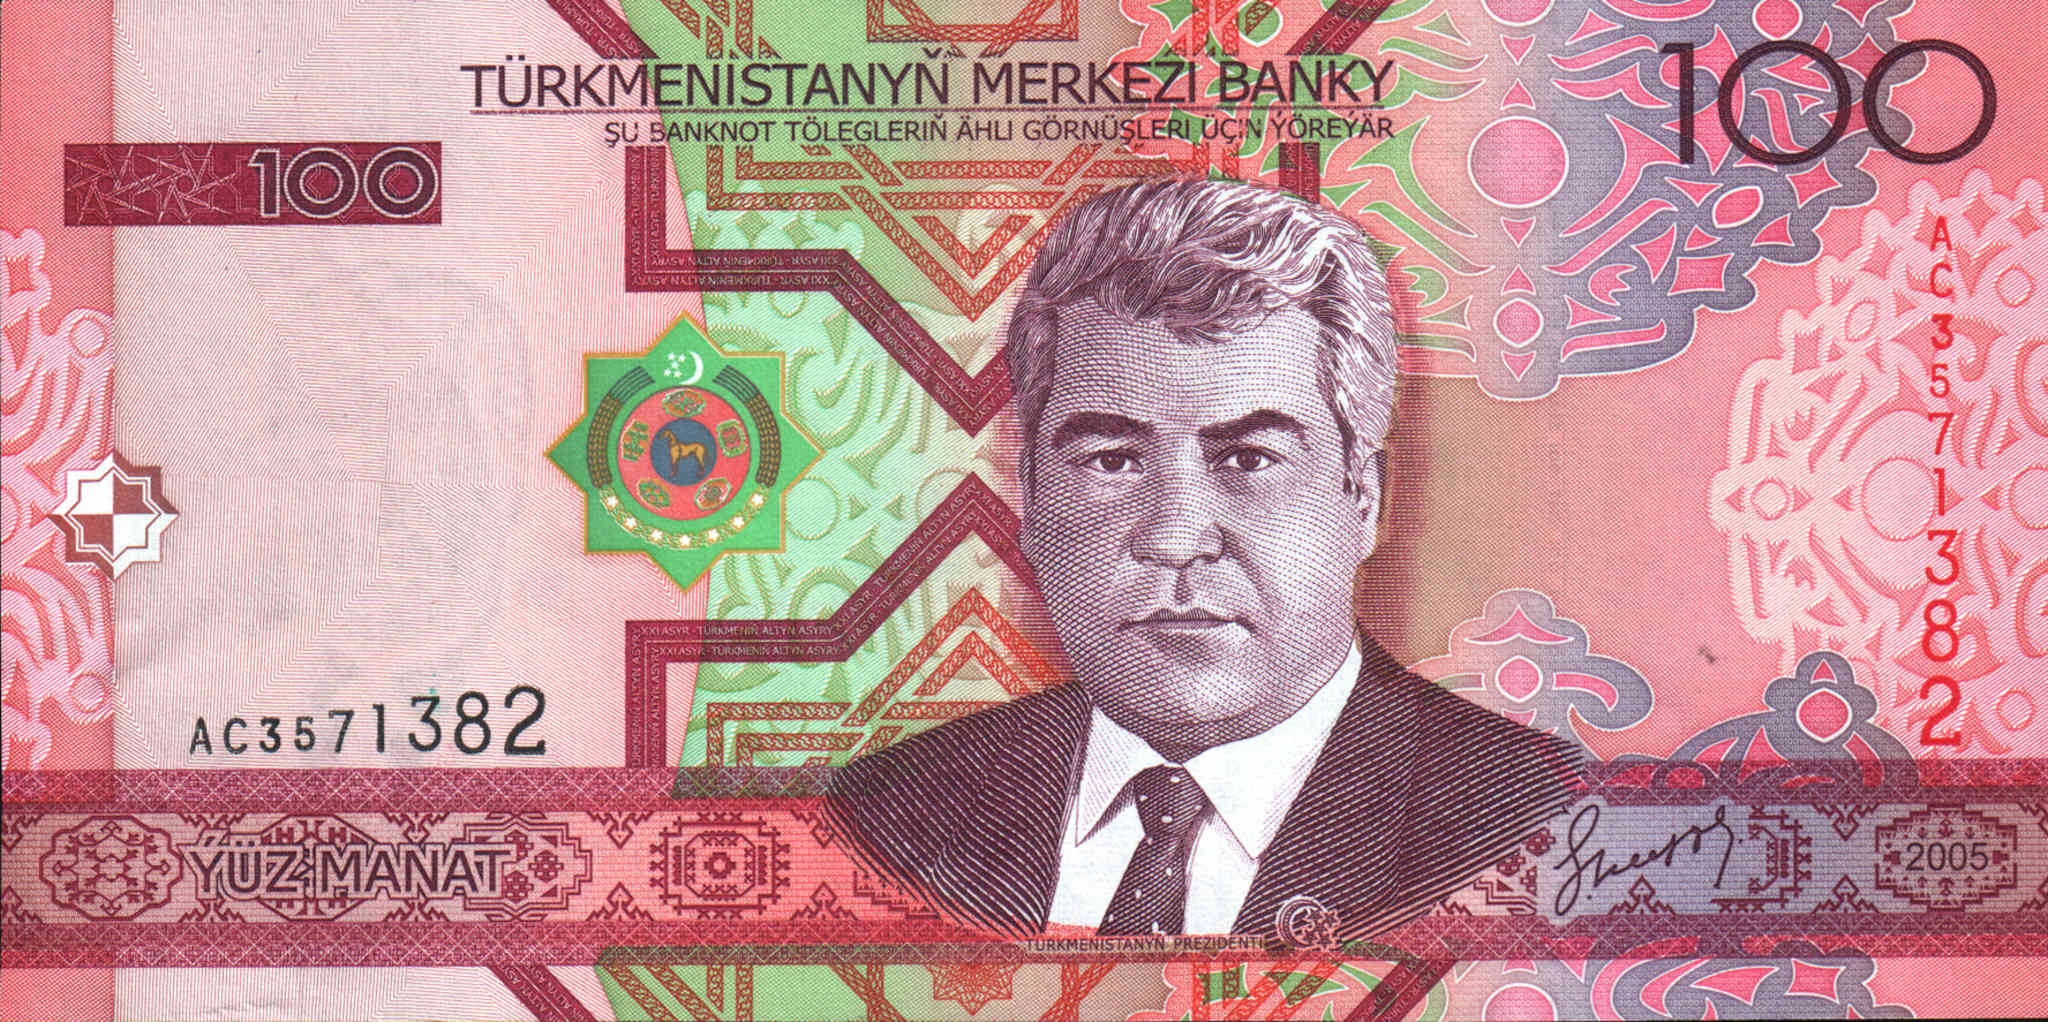 Turkmenistan 100 Manat P18 banknote UNC 2005 